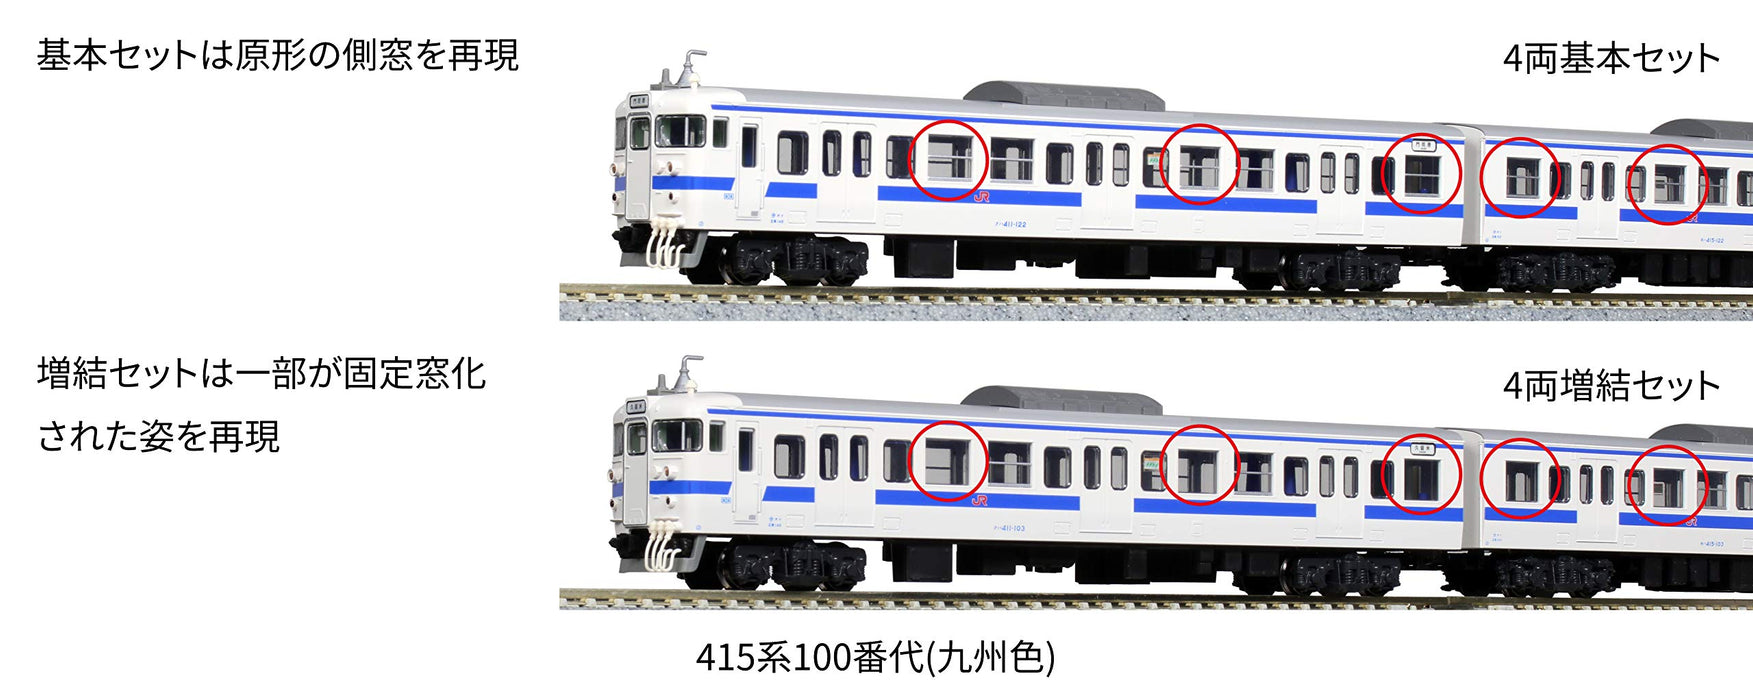 Kato N Spur 415 Serie 4-Wagen-Eisenbahnmodellzug-Set, Kyushu-Farbe, 10-1538